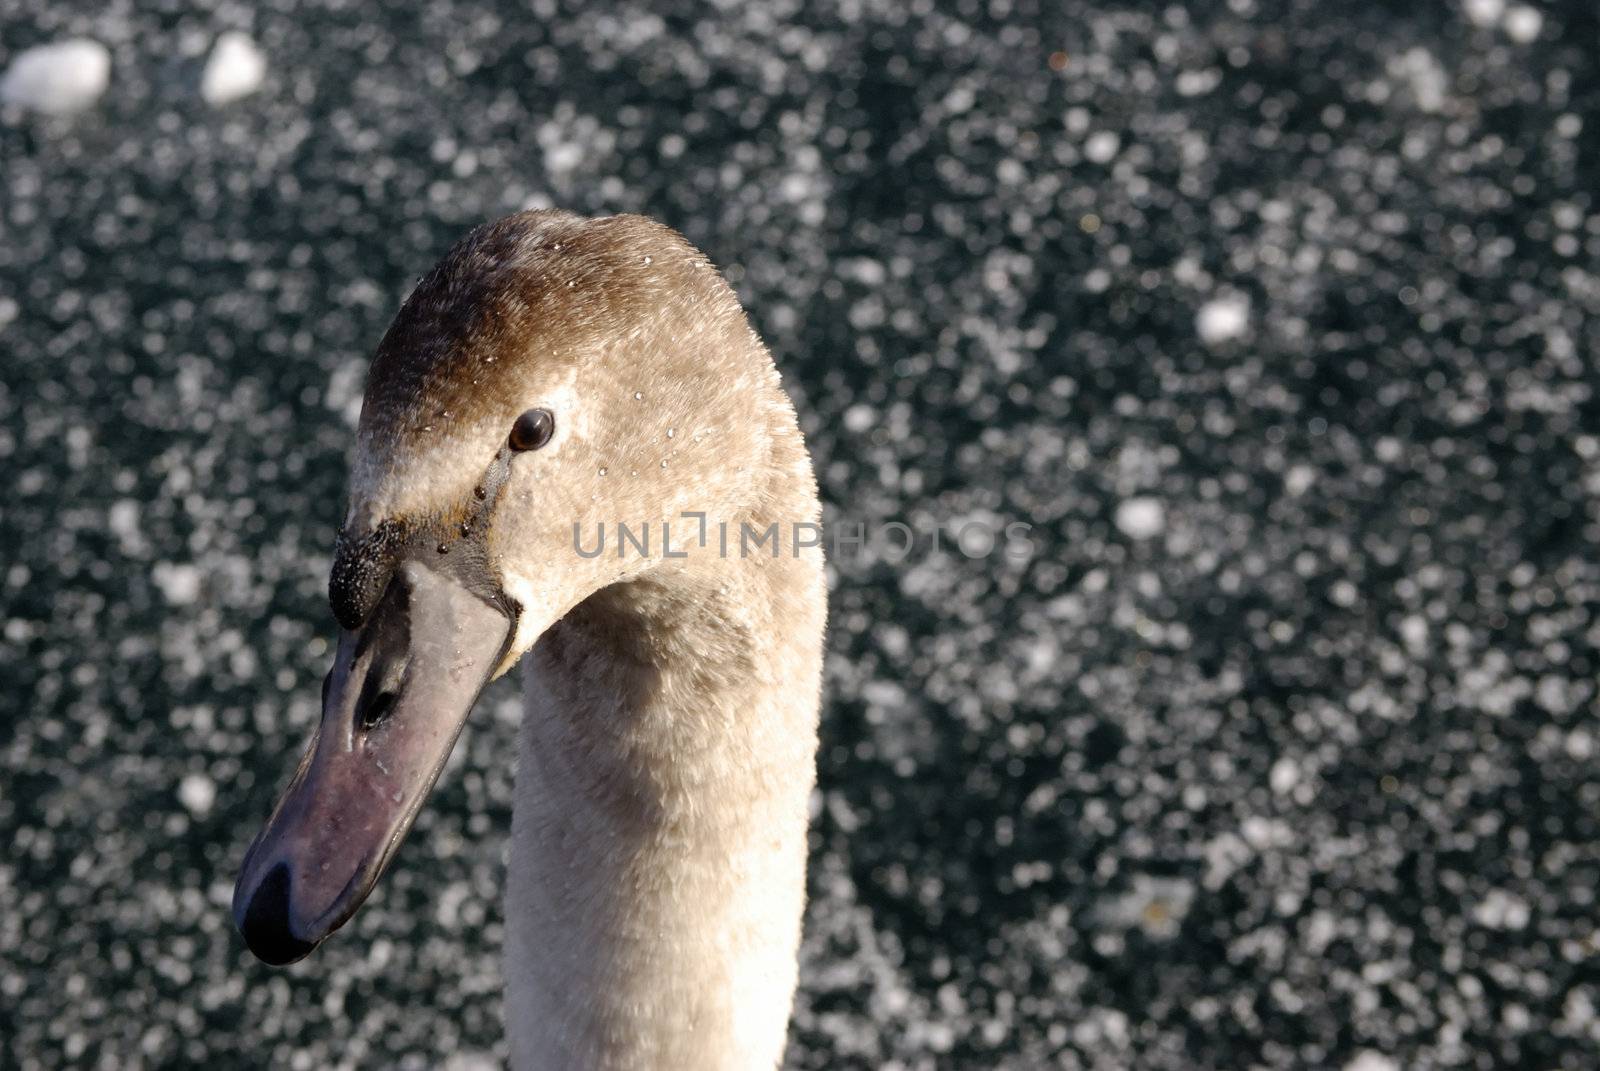 Swan in winter by fahrner